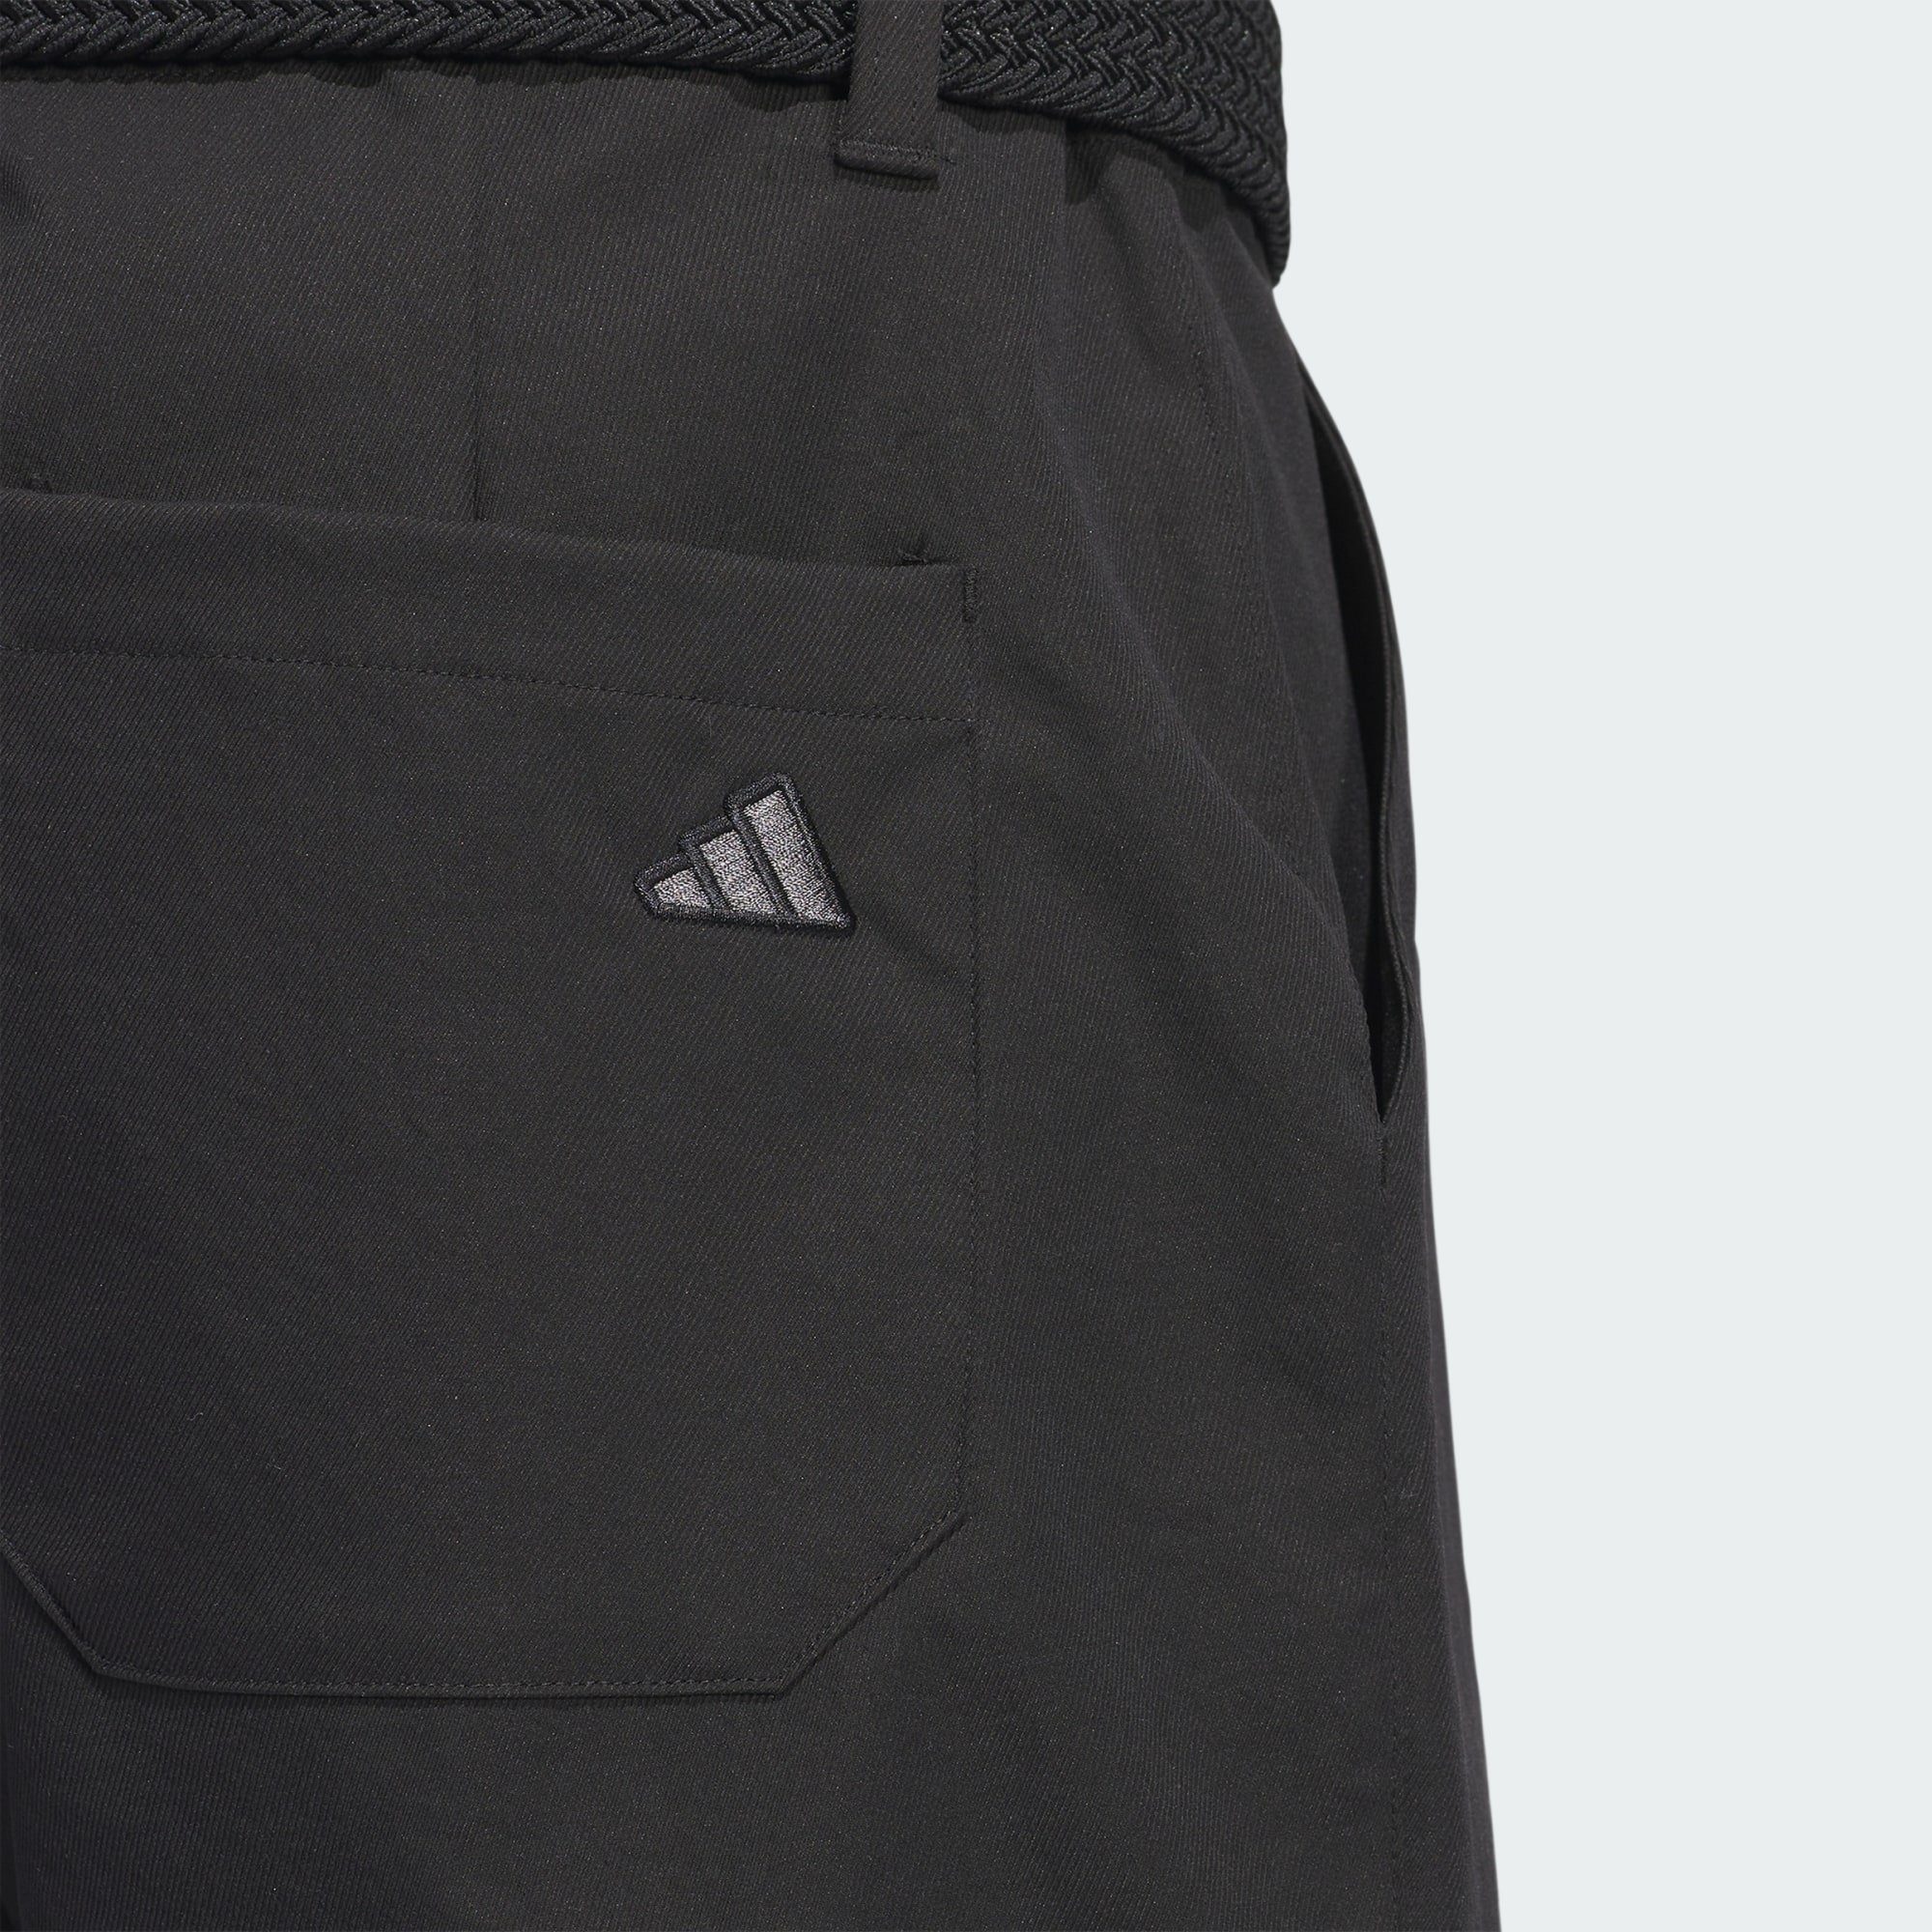 Golfhose PROGRESSIVE GO-TO Black HOSE Performance adidas